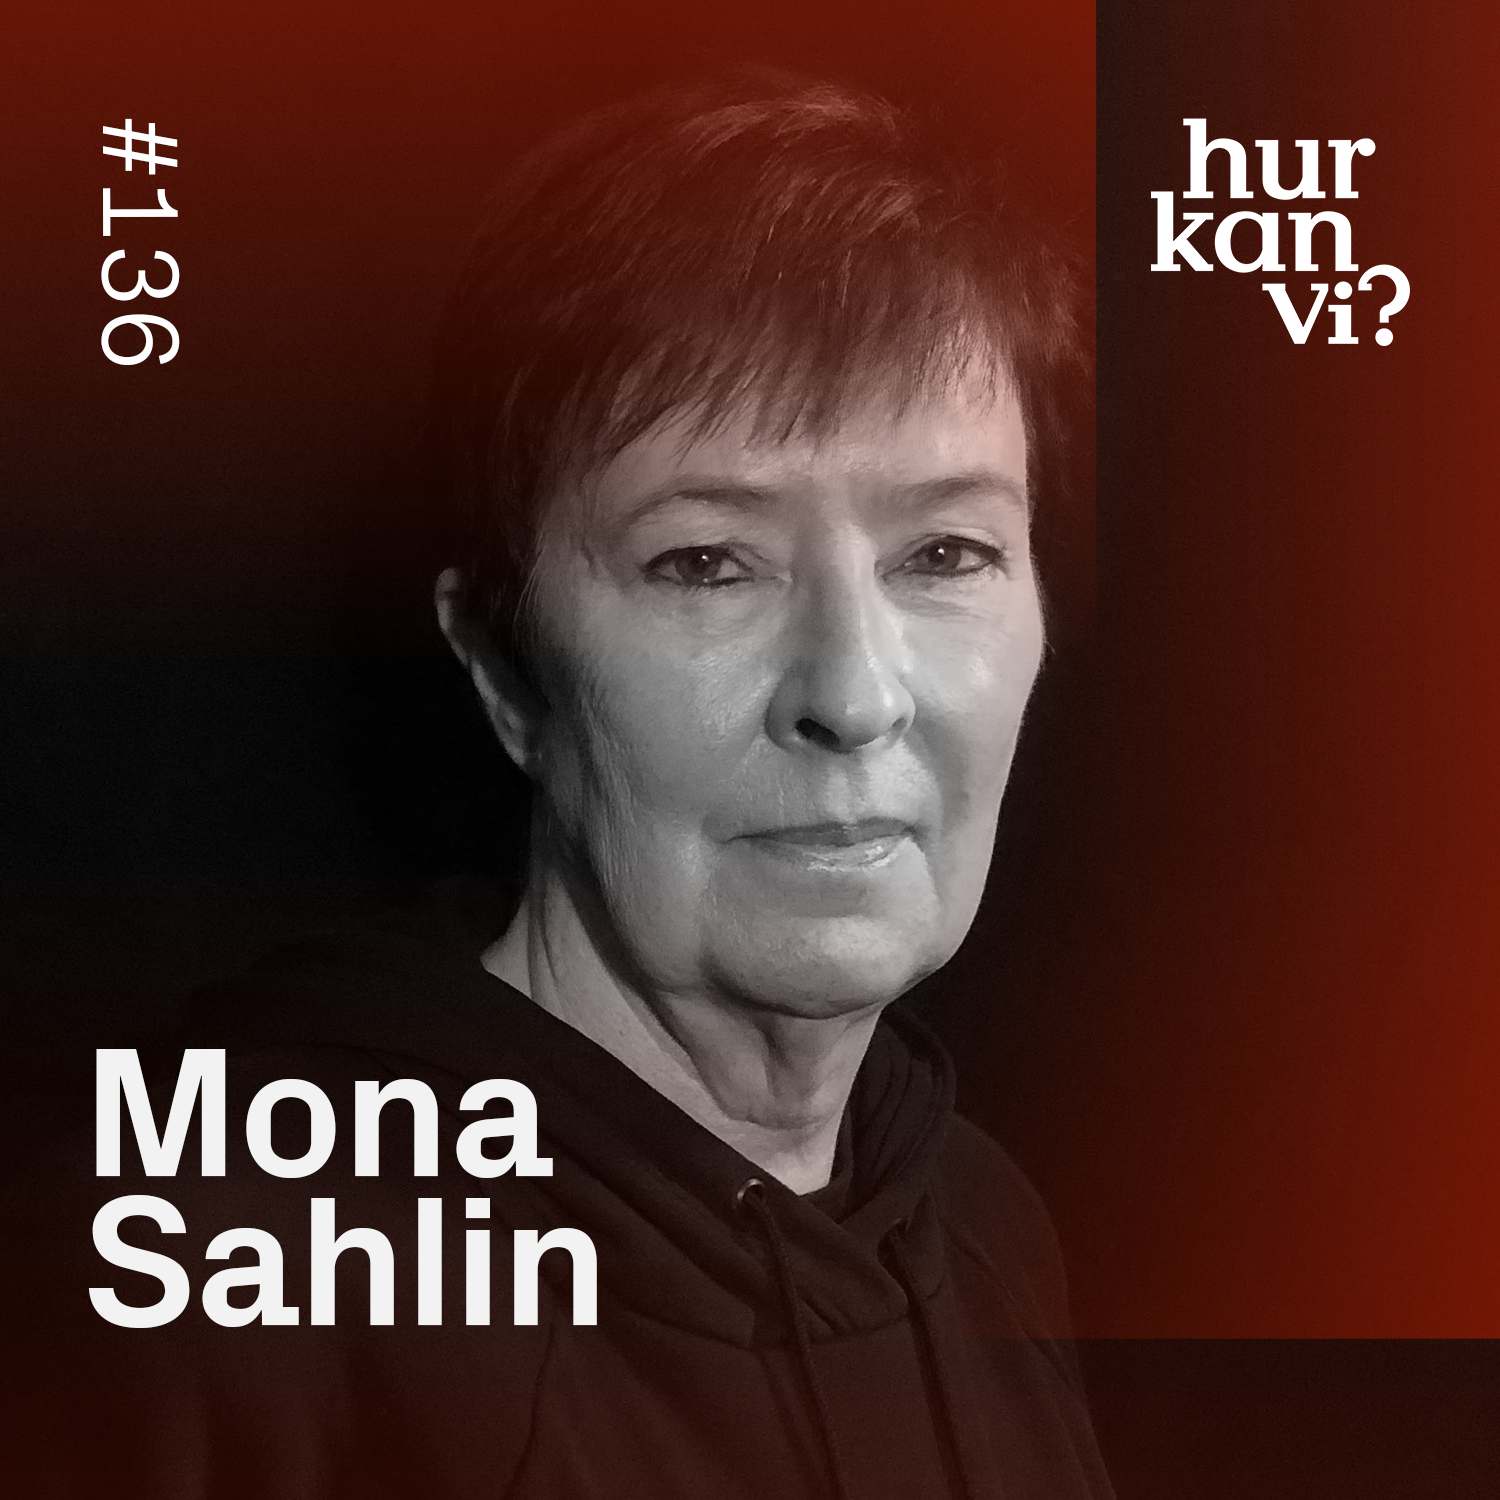 136: Socialdemokratin har tappat sin identitet – Mona Sahlin